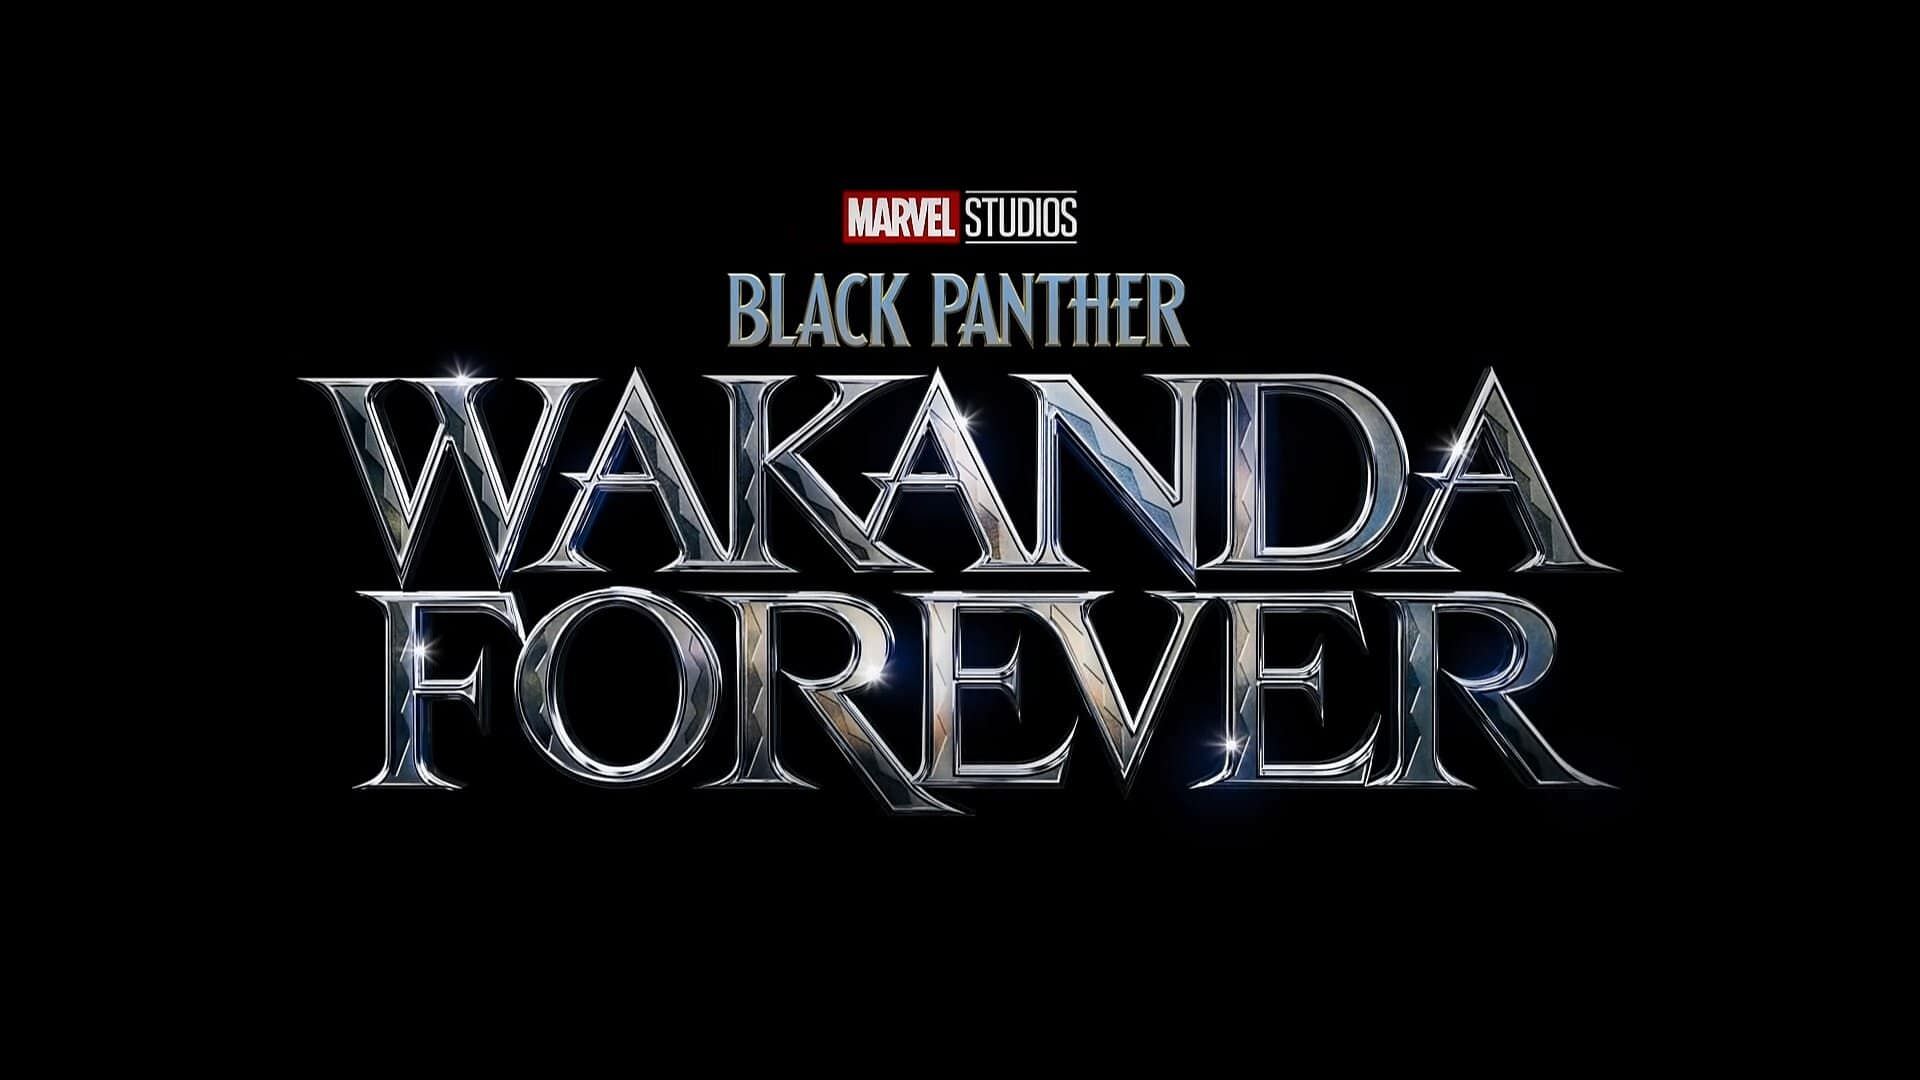 ادای دین به چادویک بوزمن فقید در اولین تریلر فیلم Black Panther 2